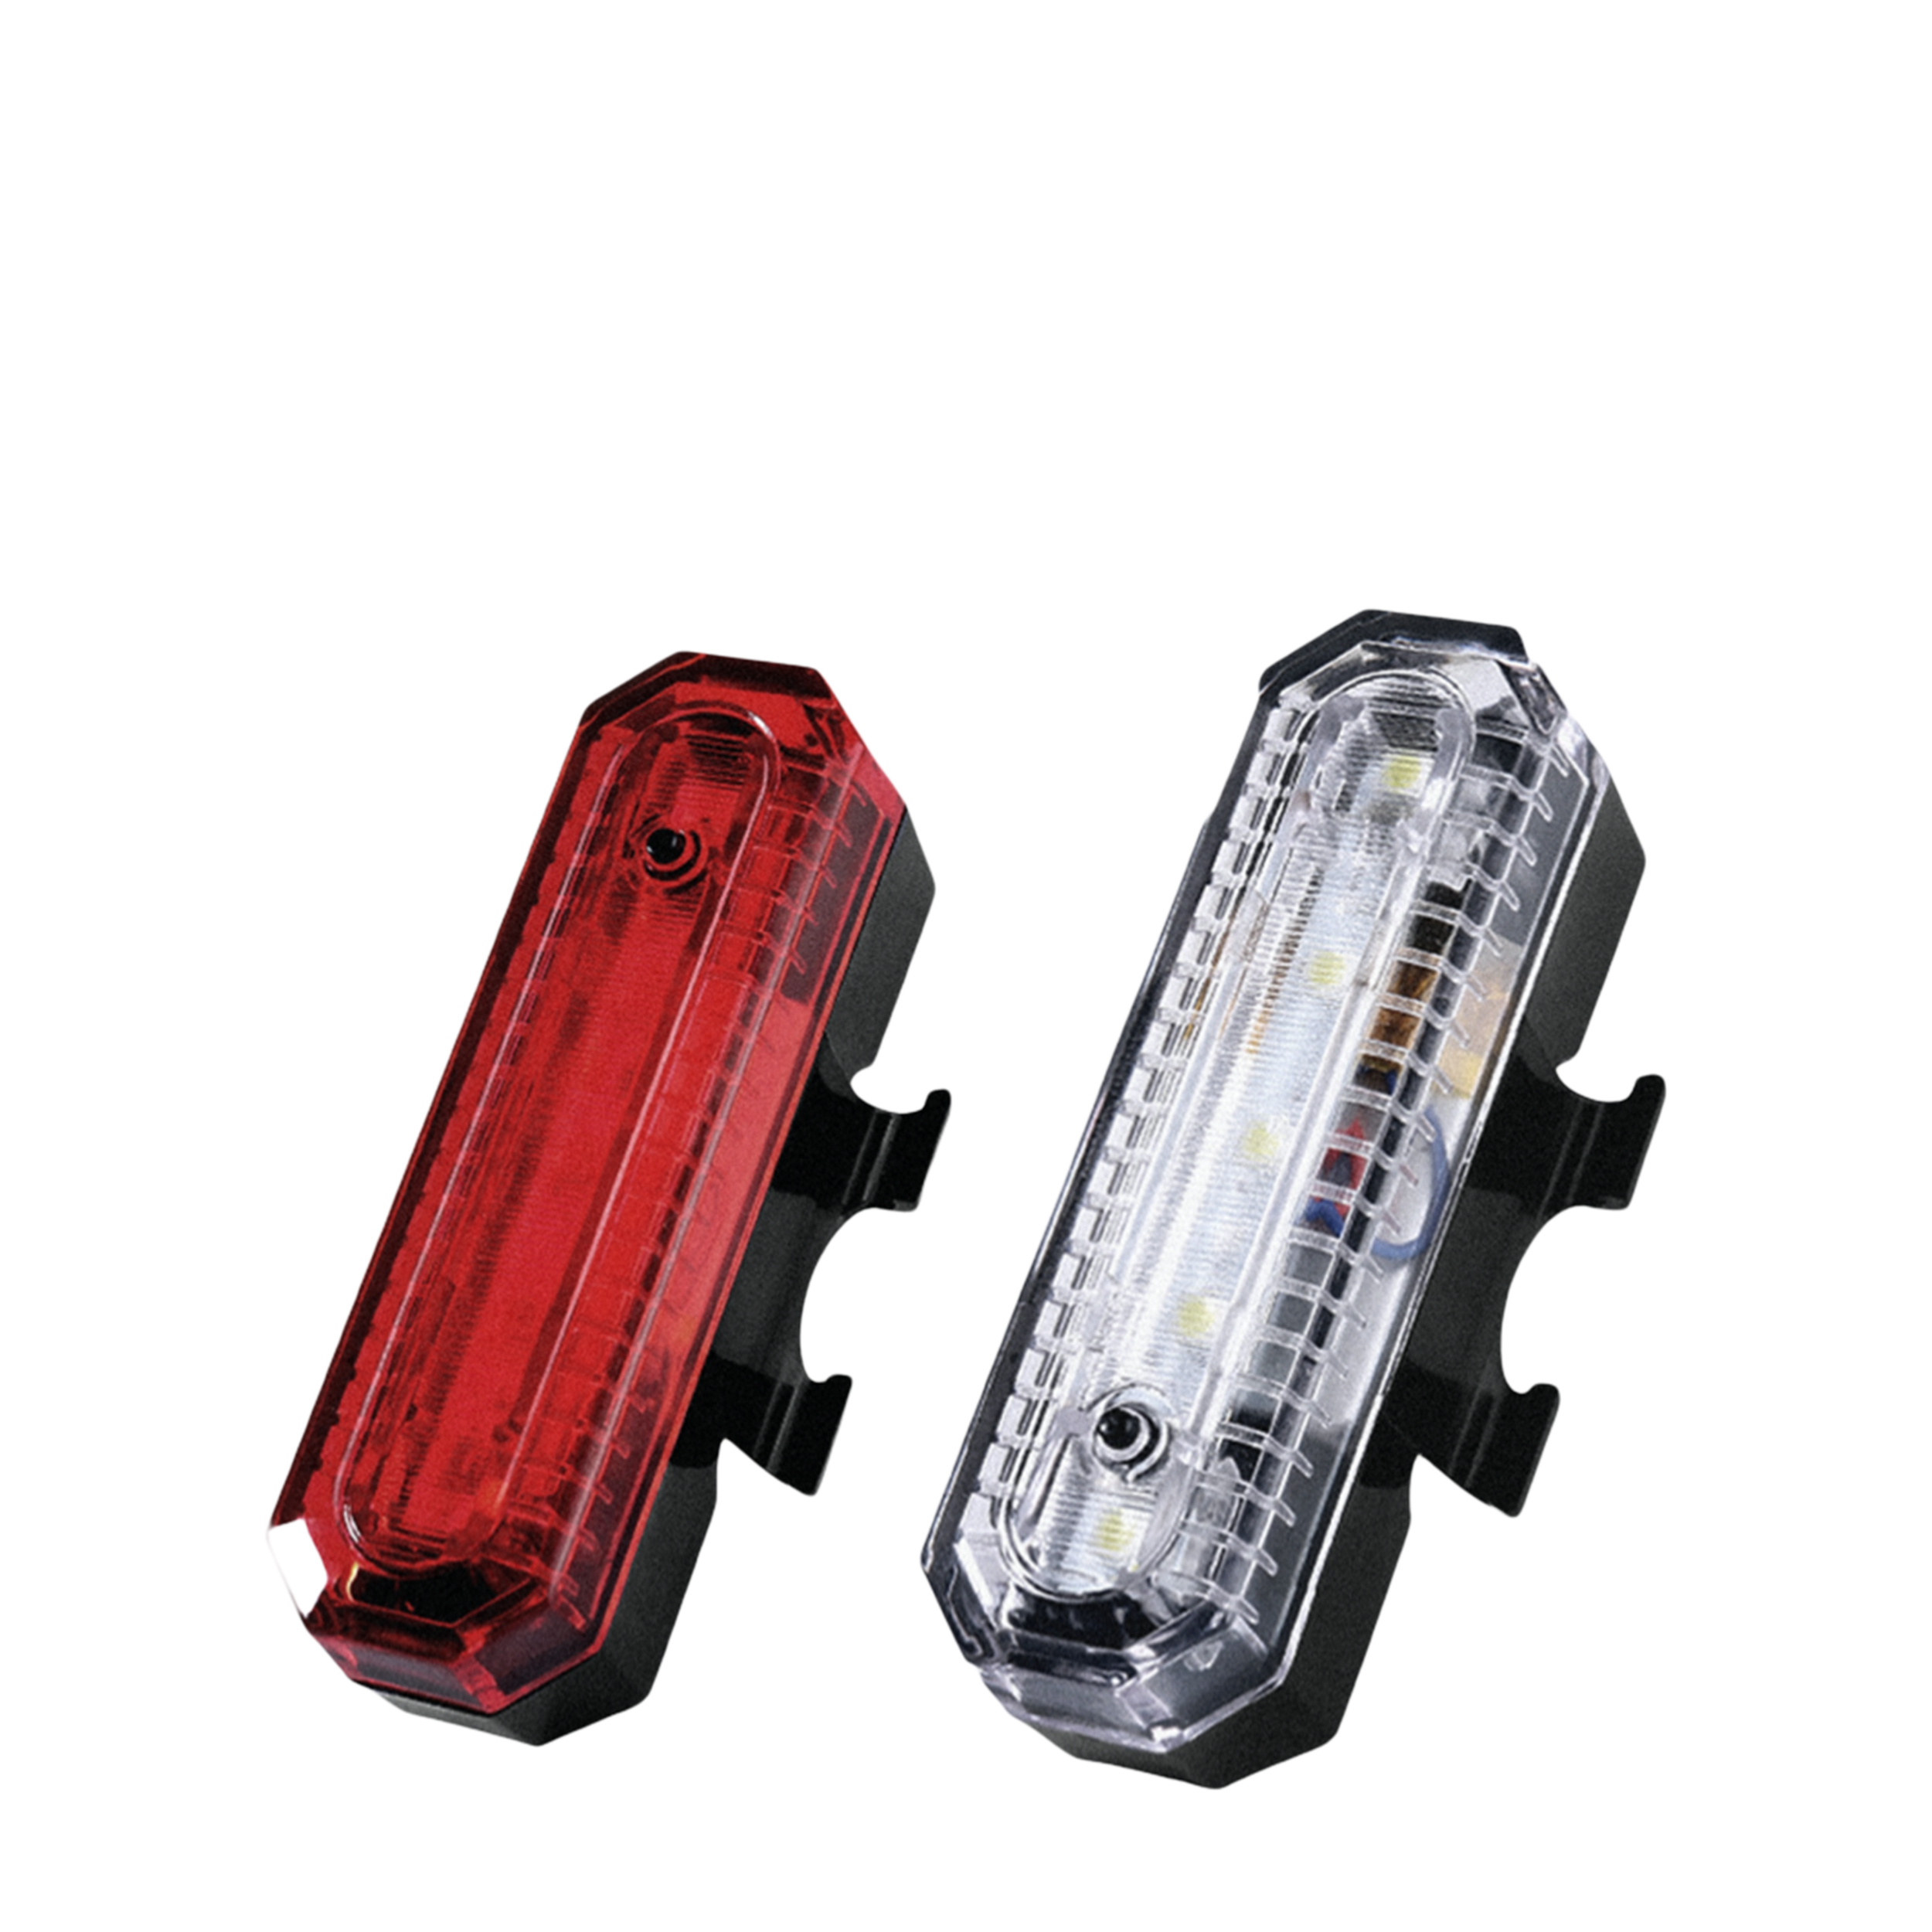 Safer Safer Светодиодные фонари для велосипеда,
комплект (передний и задний) SAFER20 Светодиодные фонари для велосипеда,
комплект (передний и задний) - фото 1